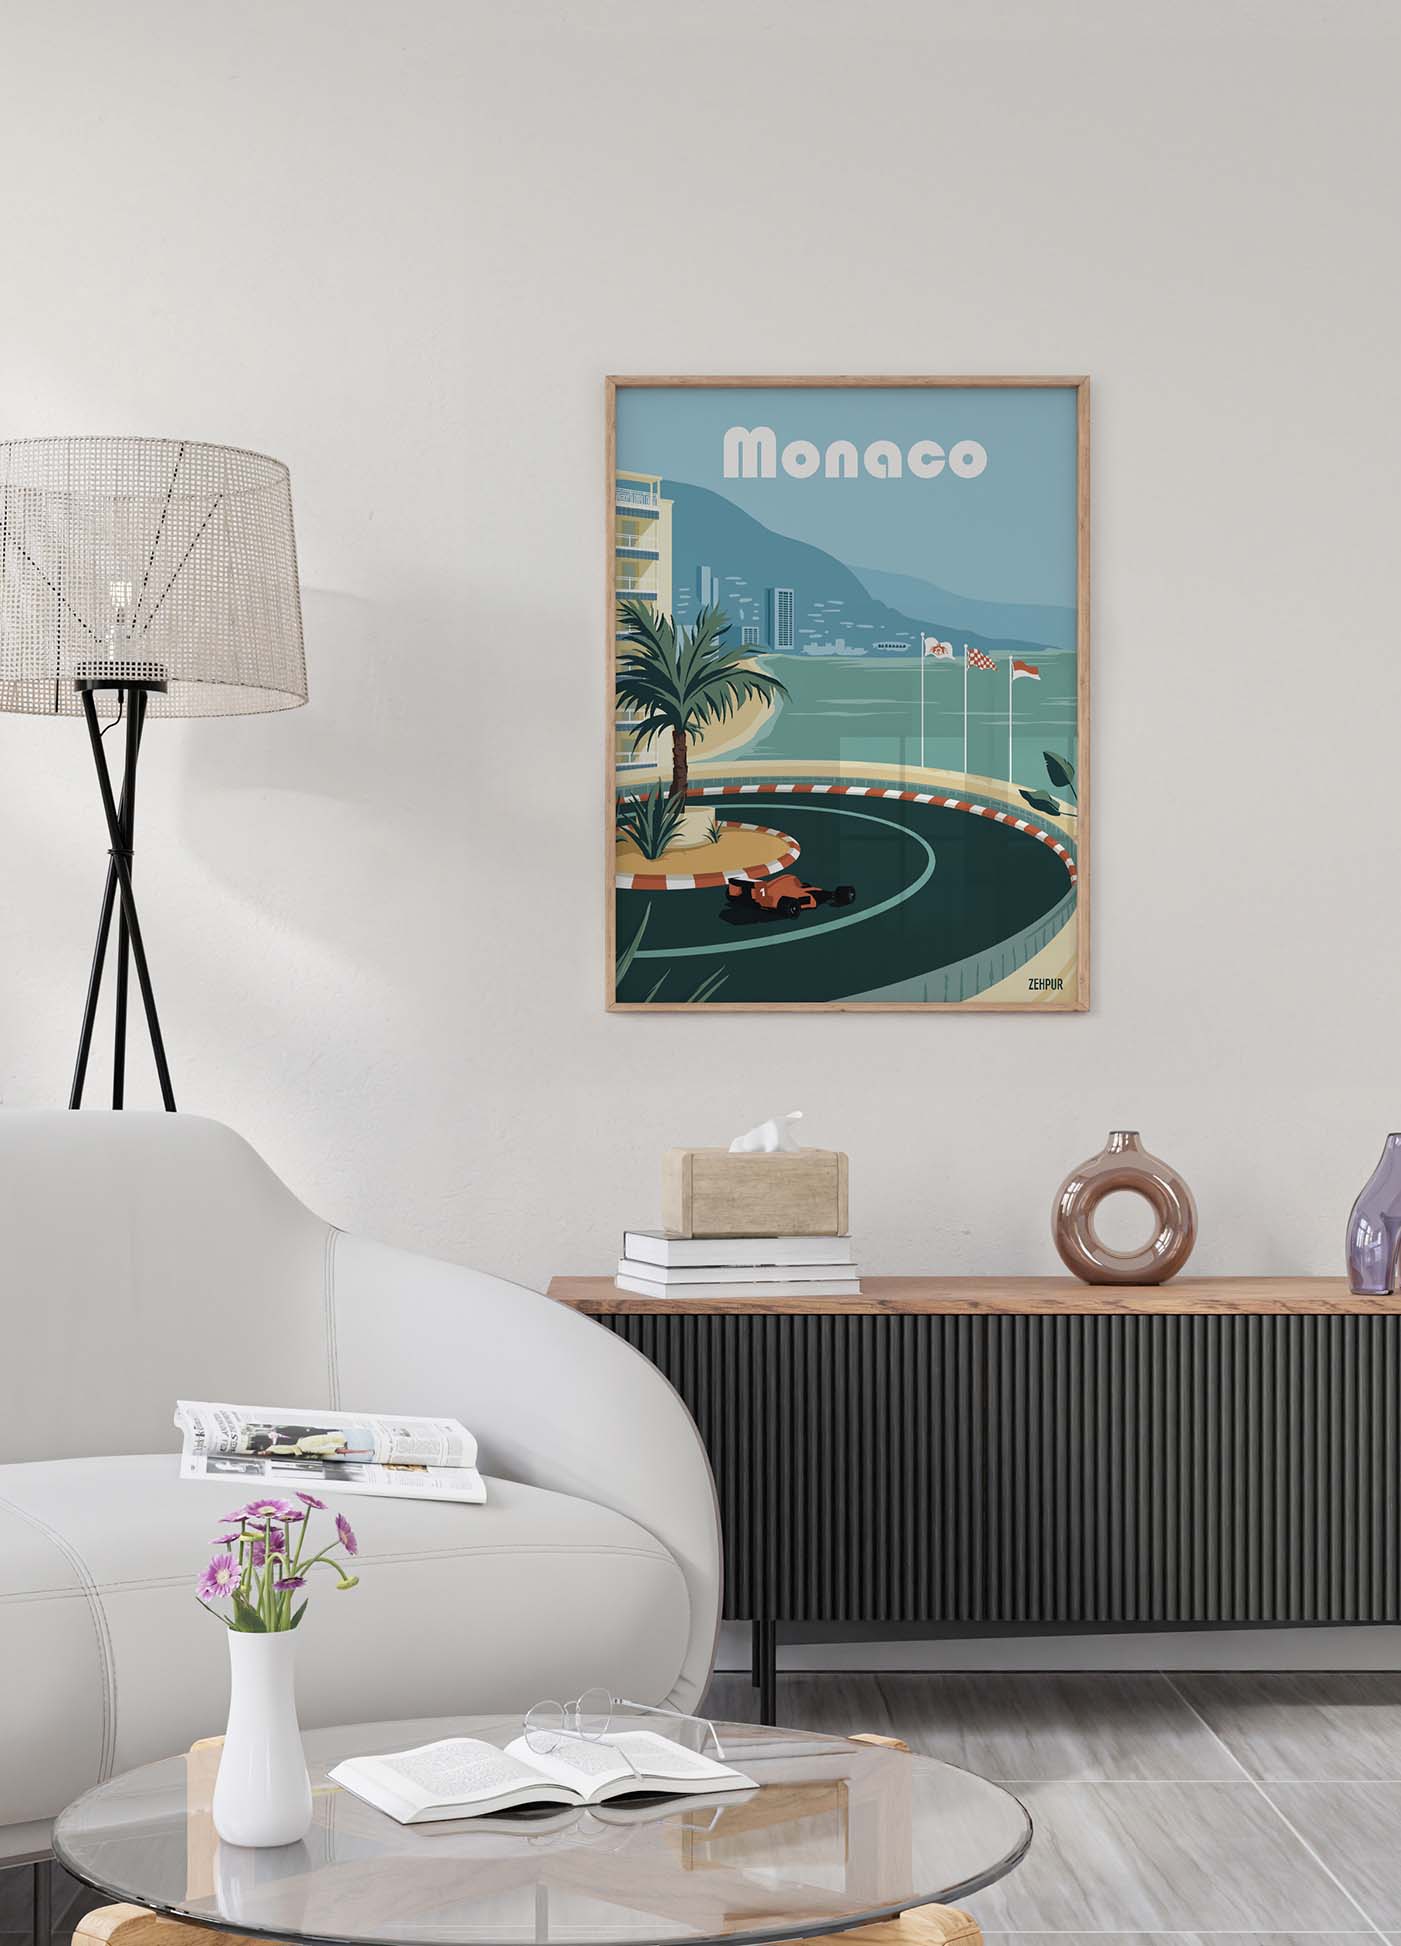 Affiche murale du Grand Prix de Monaco dans un salon moderne. L'affiche montre une voiture de course sur un circuit sinueux entouré de palmiers et de bâtiments en bord de mer, avec l'inscription 'Monaco' en haut. La scène inclut un canapé blanc, une lampe sur pied, une table basse avec des livres et un vase de fleurs, et un meuble de rangement moderne.